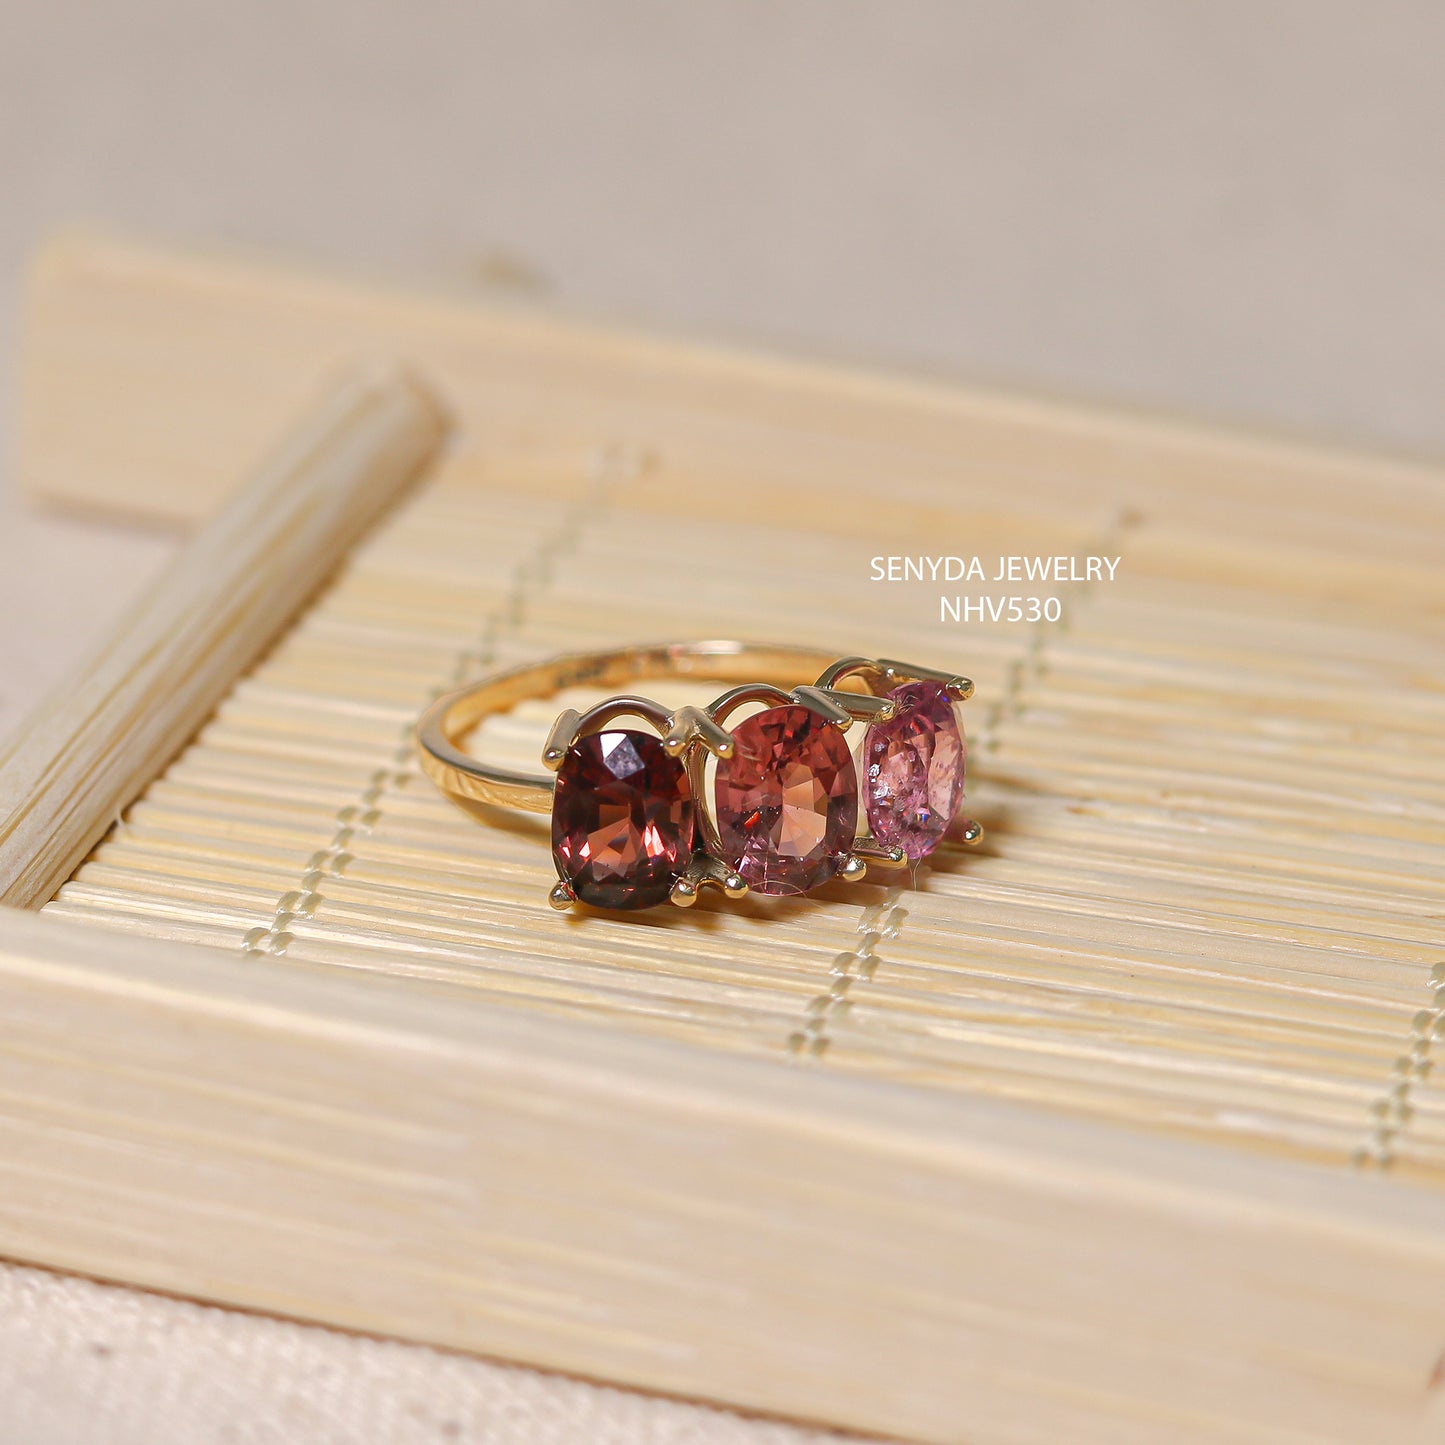 Senyda 14K Solid Gold Natural Pink Spinel Ring